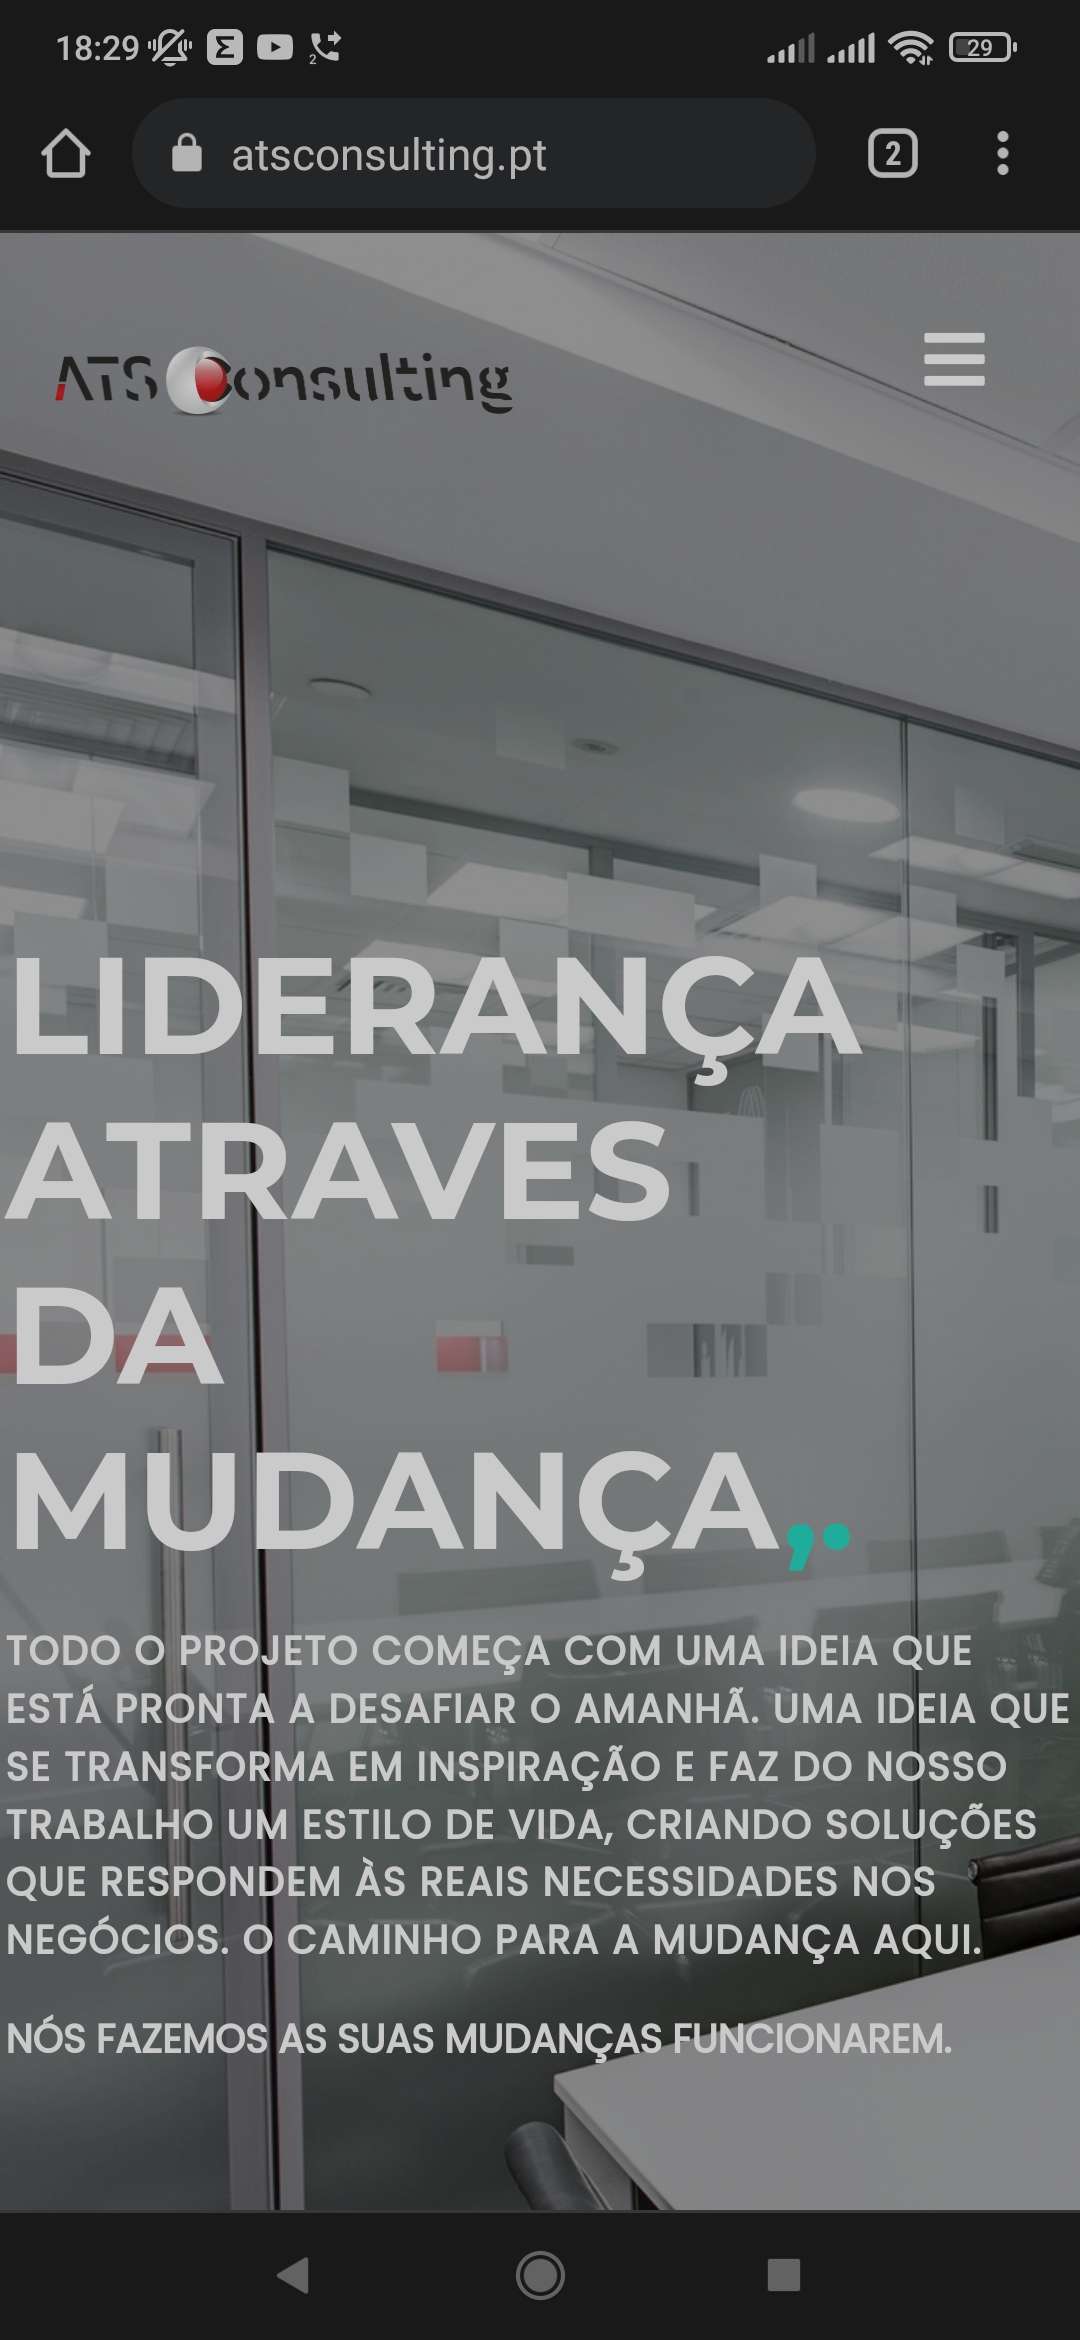 Sérgio Leite - Santo Tirso - Desenvolvimento de Aplicações iOS